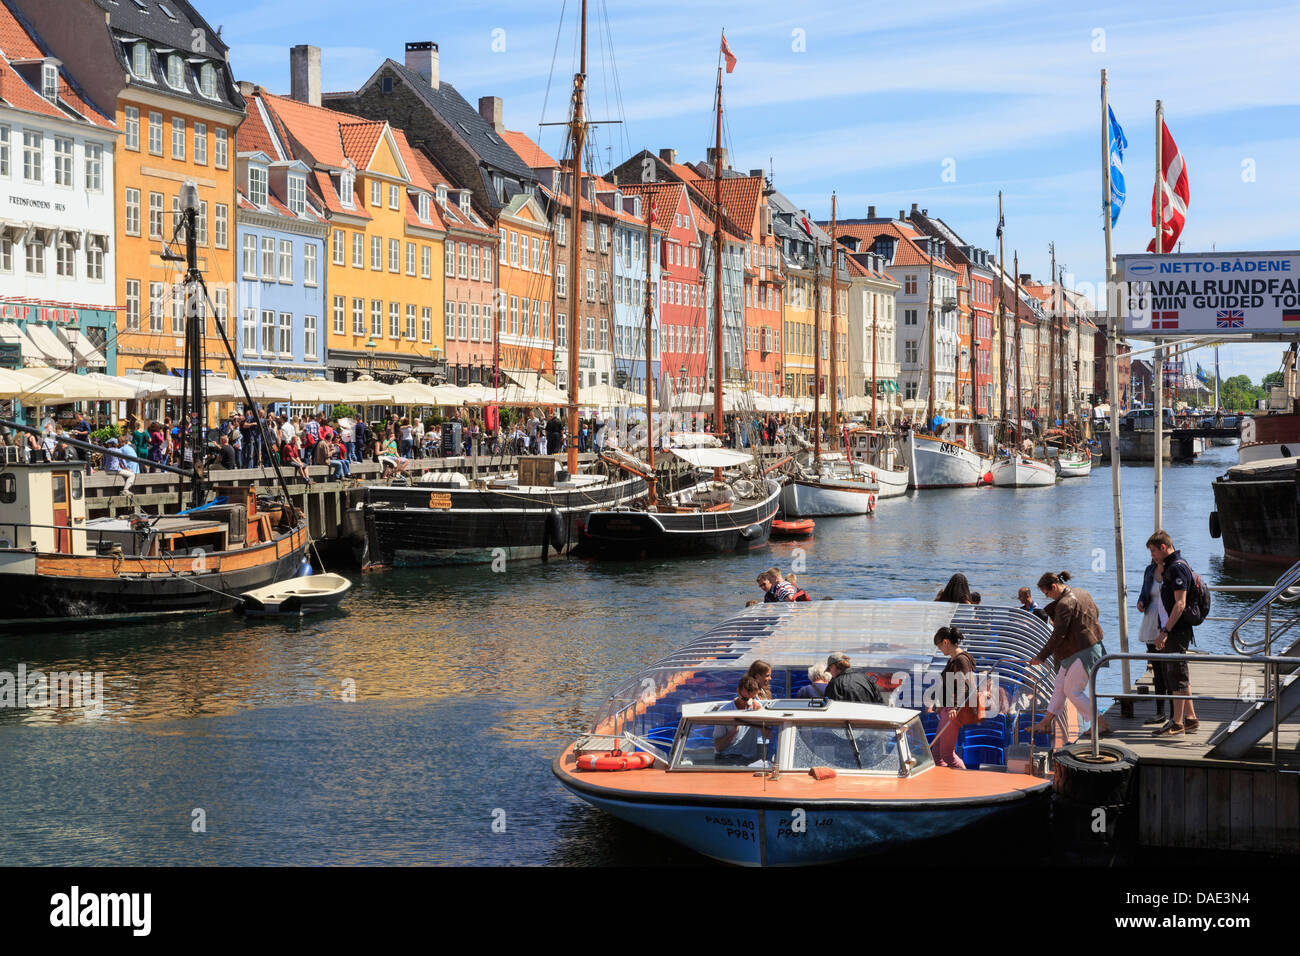 I turisti sul canal tour in barca con vecchie barche ormeggiate di fronte gli edifici colorati nel porto di Nyhavn a Copenaghen Zelanda Danimarca Foto Stock